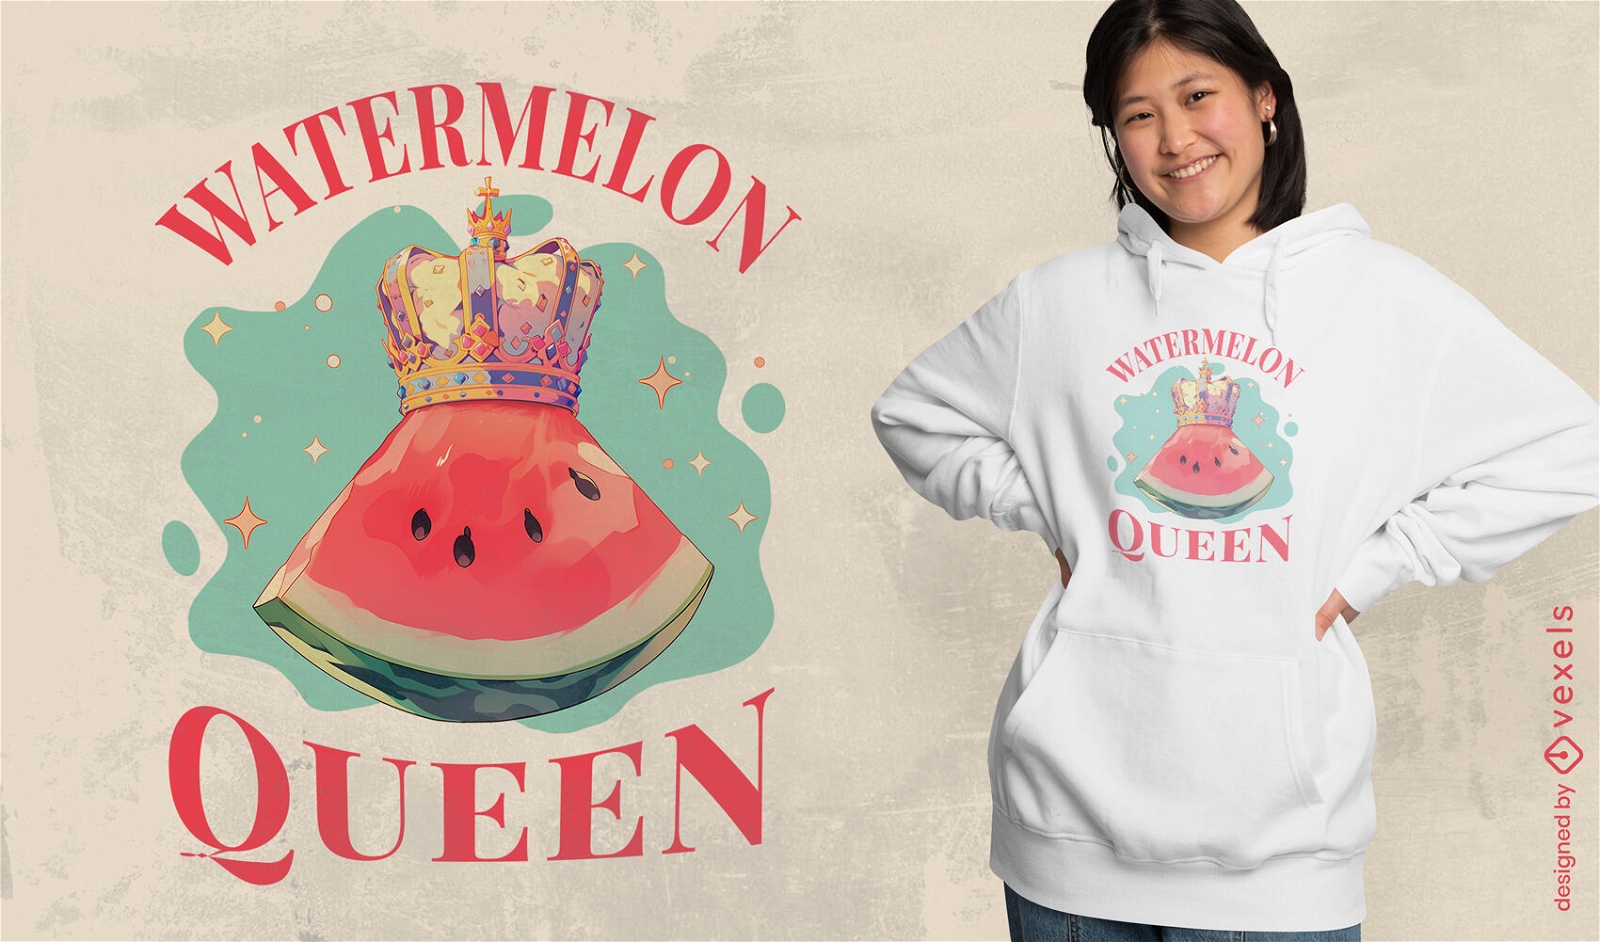 Wassermelonenkönigin-T-Shirt-Design